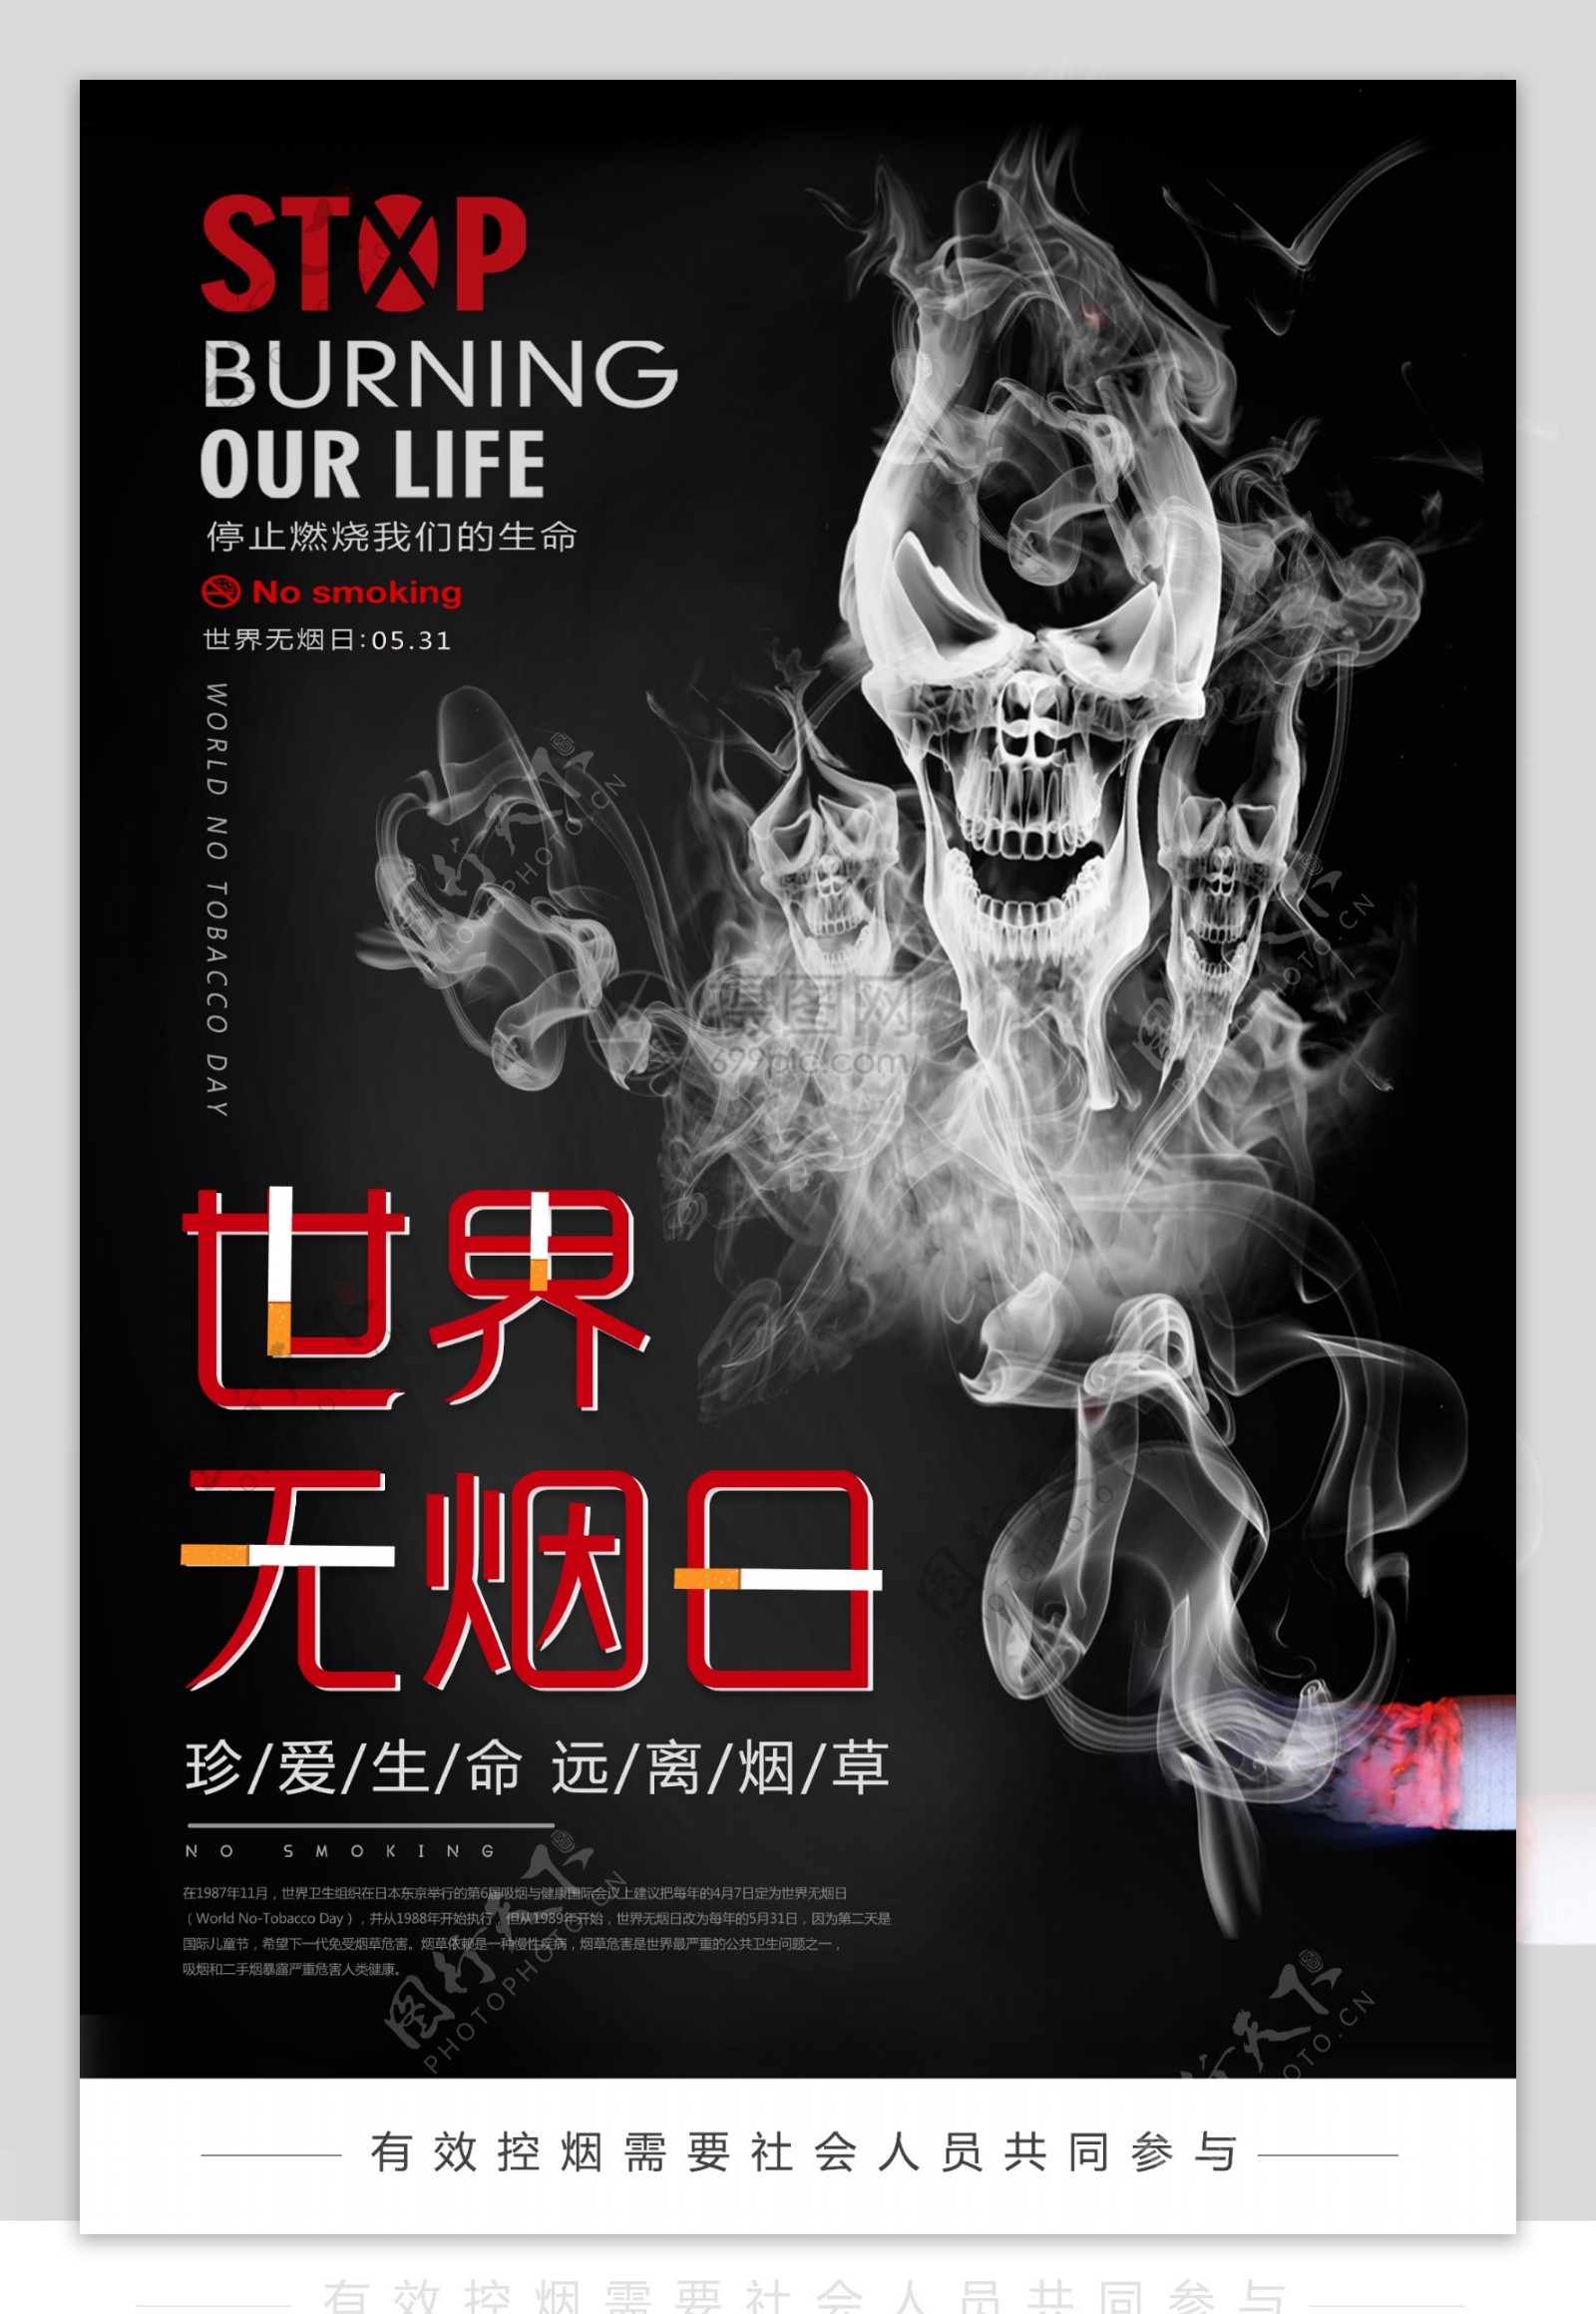 黑色系世界无烟日公益宣传海报